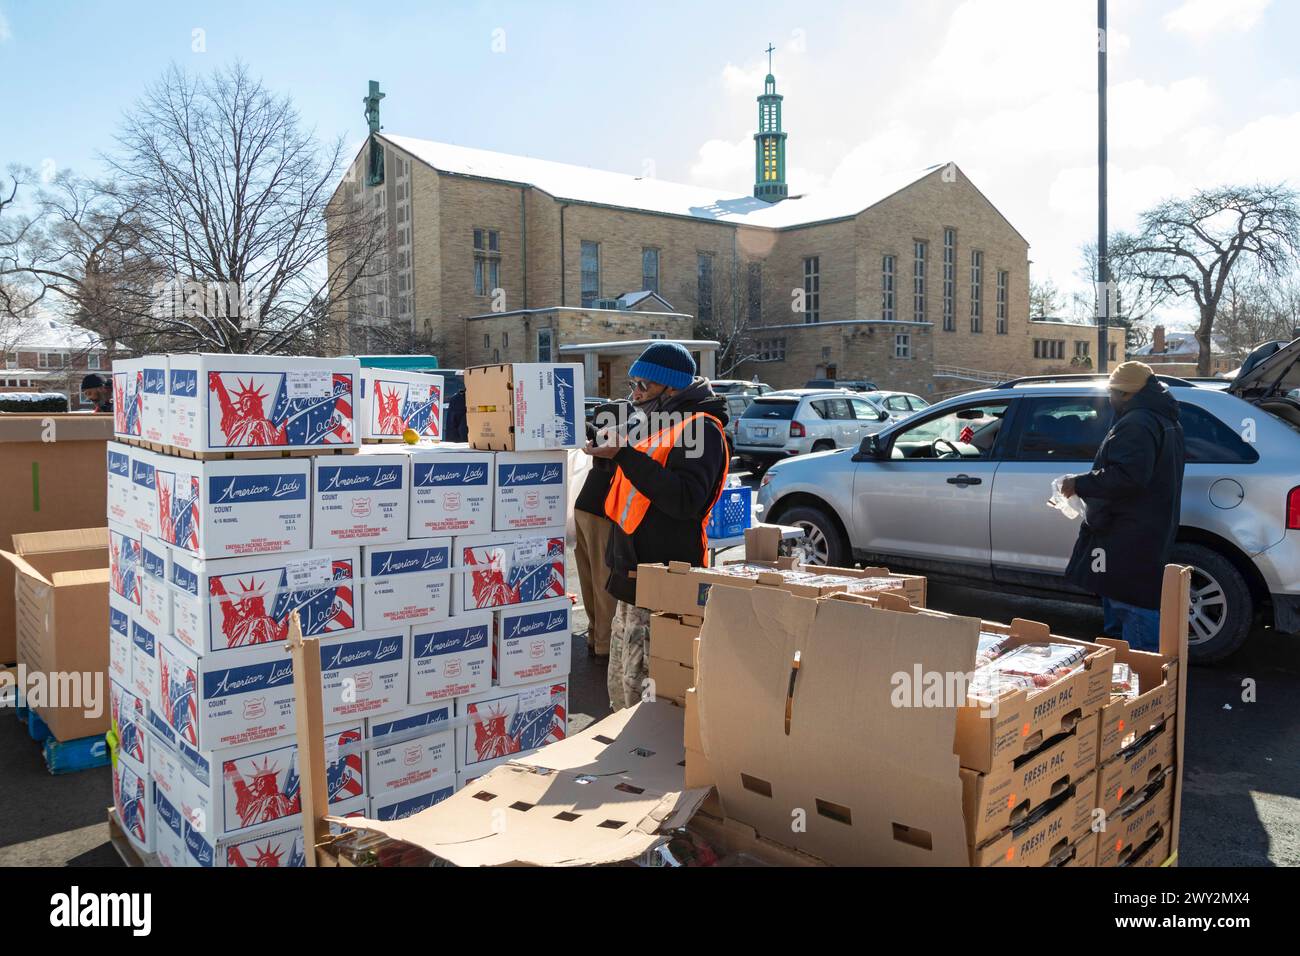 Detroit, Michigan - kostenlose Nahrung wird an Menschen verteilt, die an einer Gemeindegesundheitsmesse teilnehmen. Stockfoto